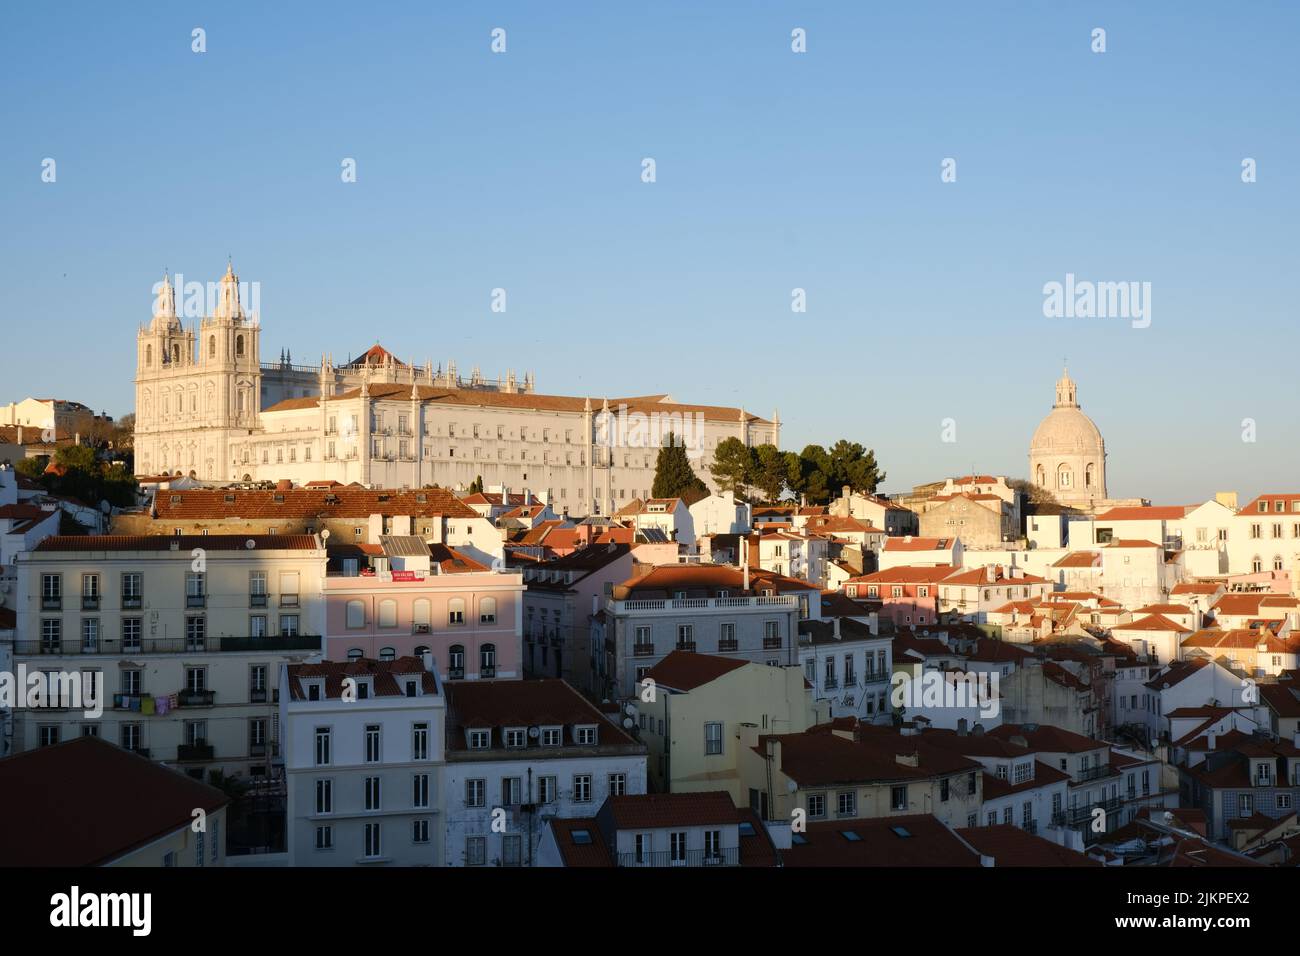 Eine schöne Aufnahme eines Stadtbildes mit ähnlichen Gebäuden in Portugal Stockfoto